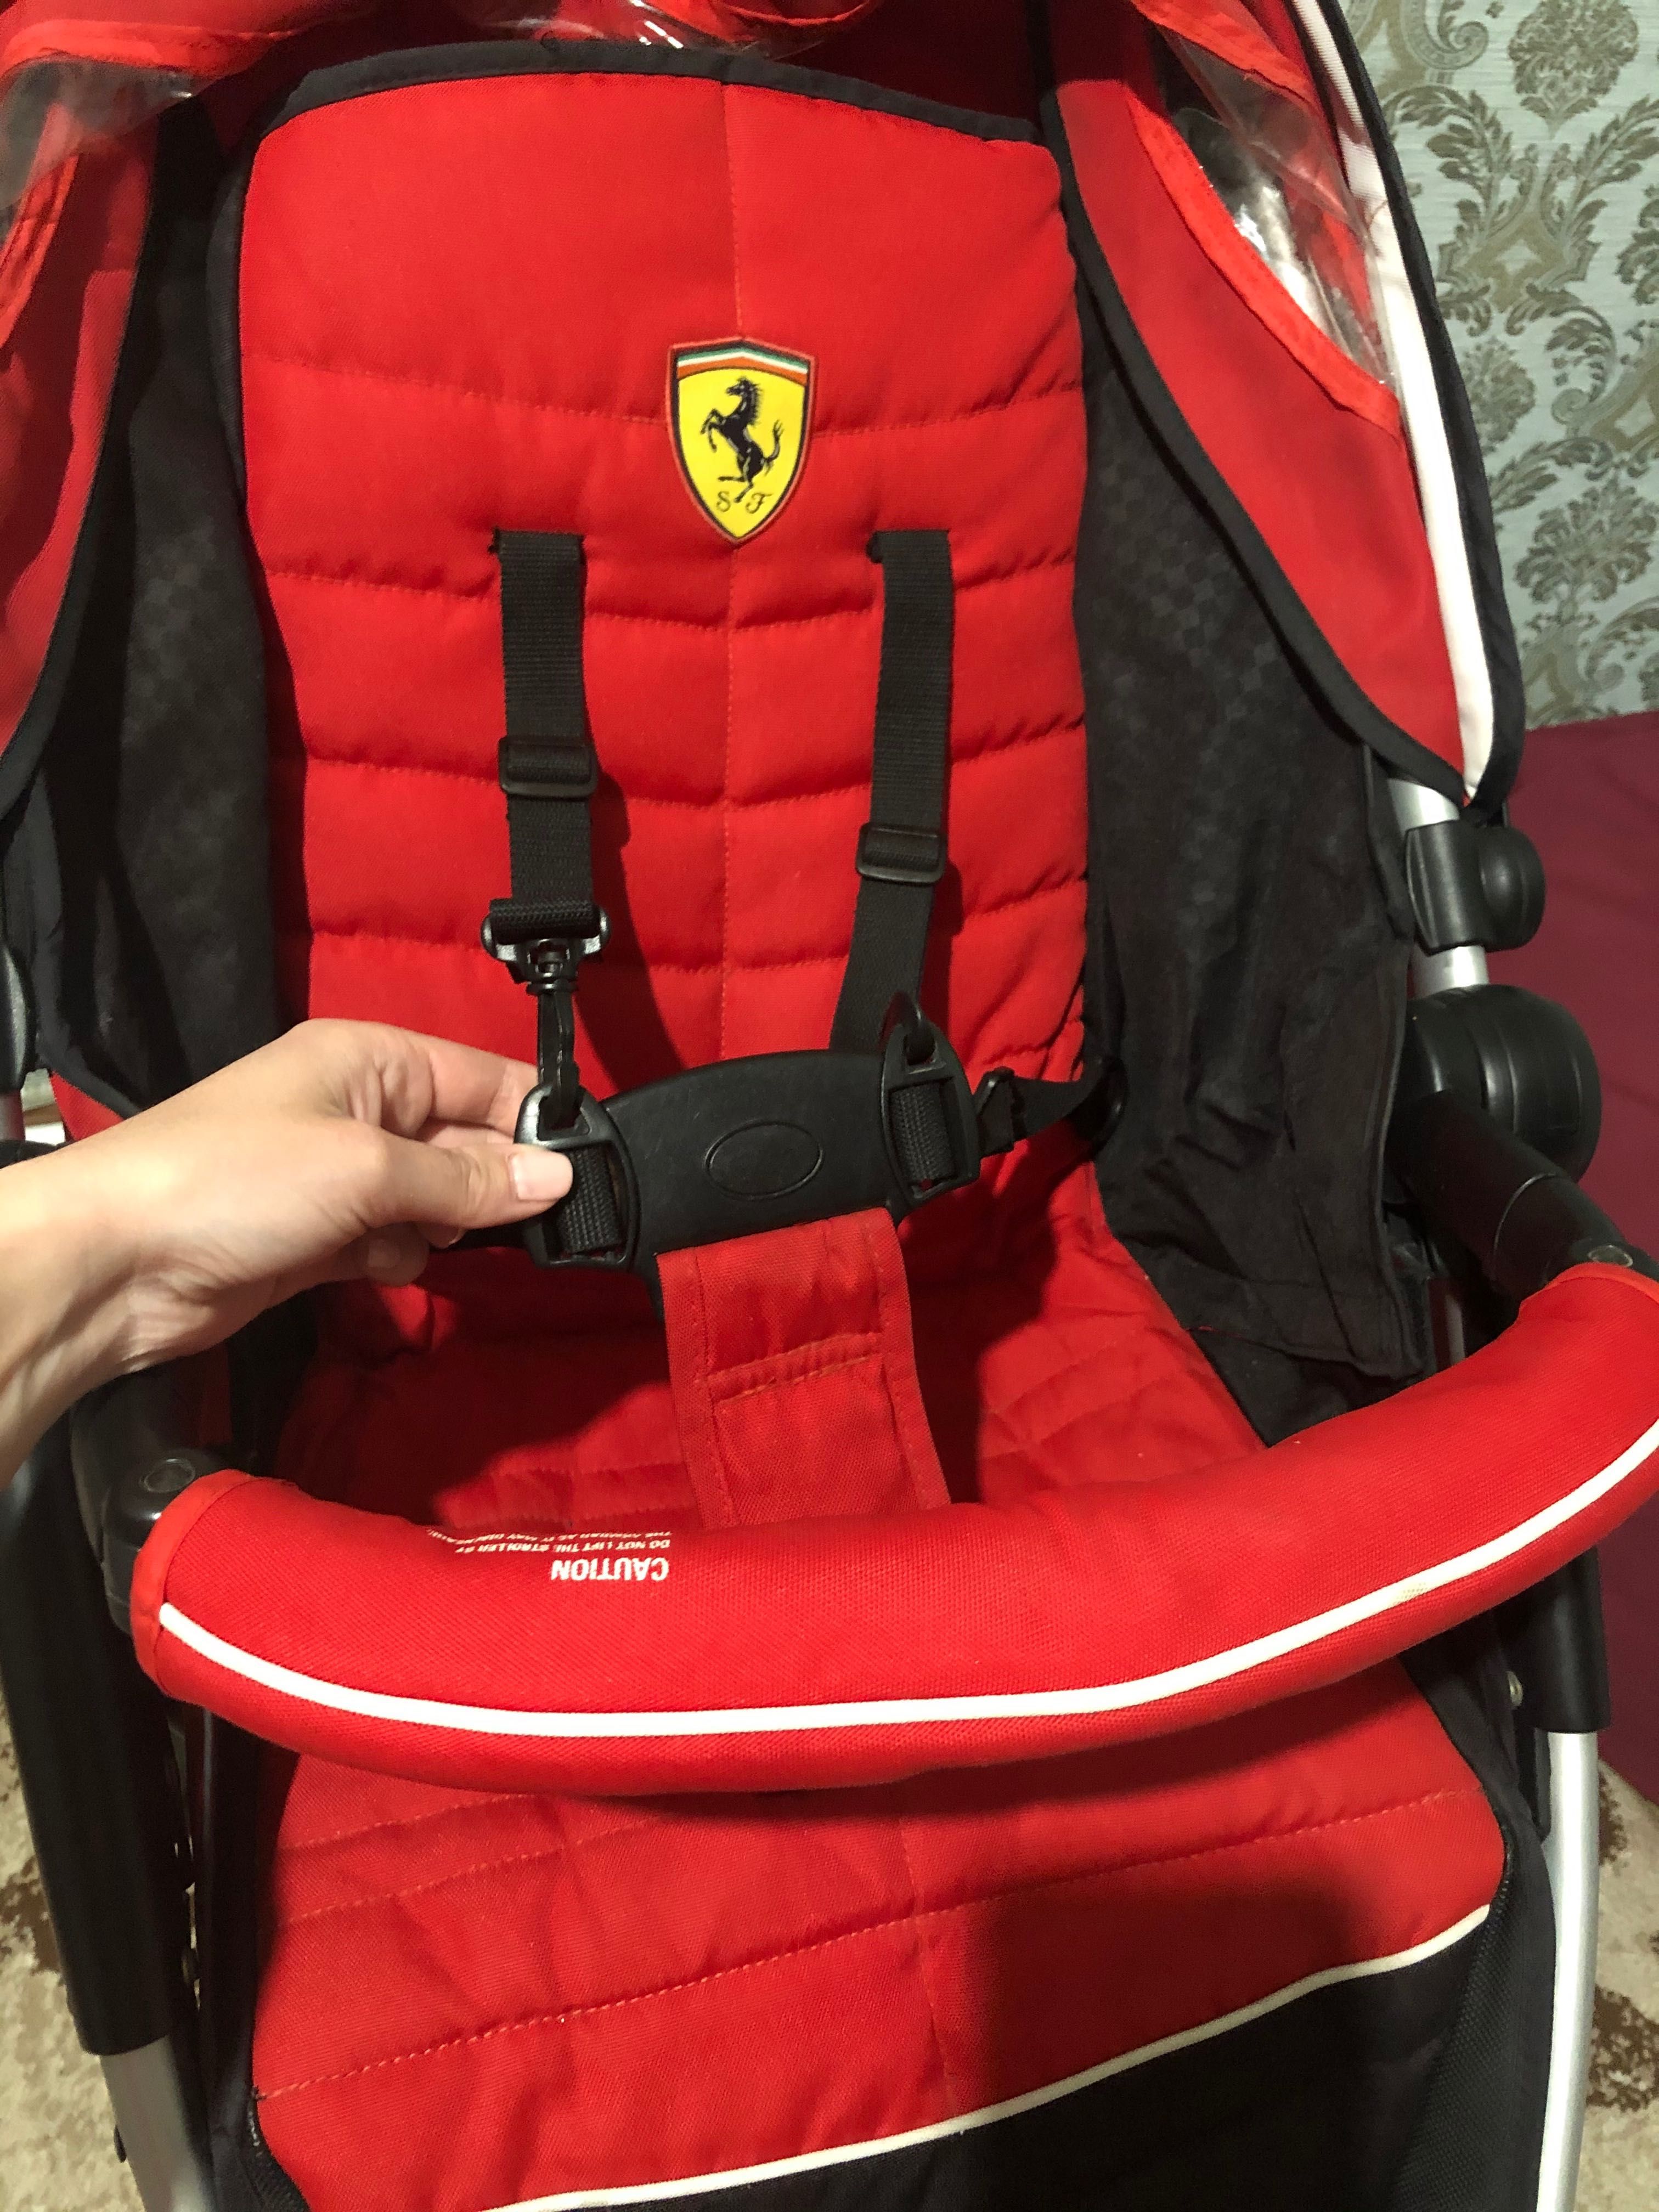 Детская коляска Ferrari